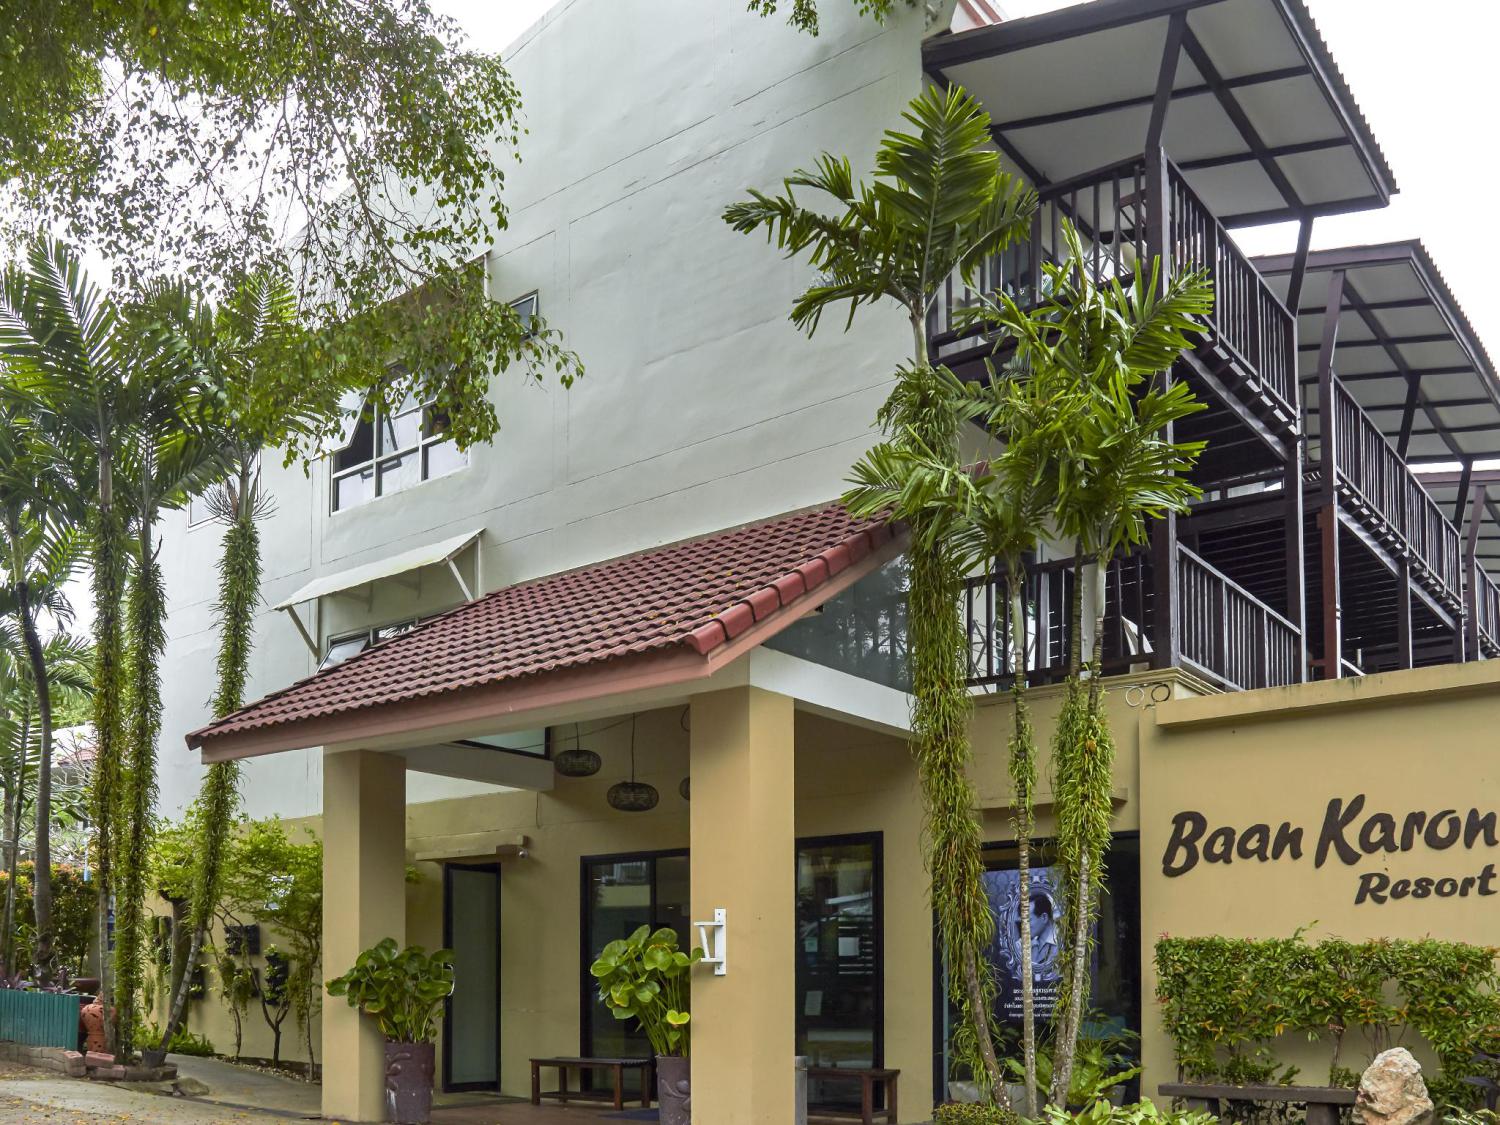 Baan Karon Resort - Image 5